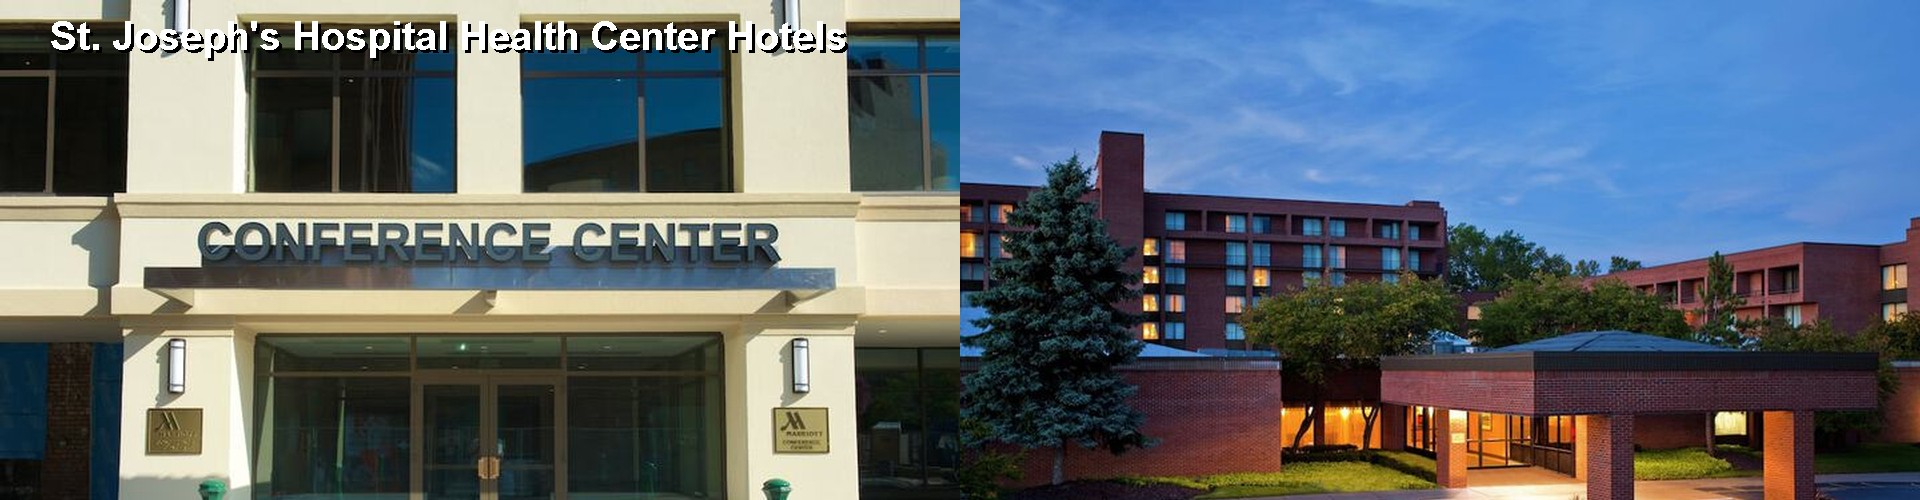 5 Best Hotels near St. Joseph's Hospital Health Center